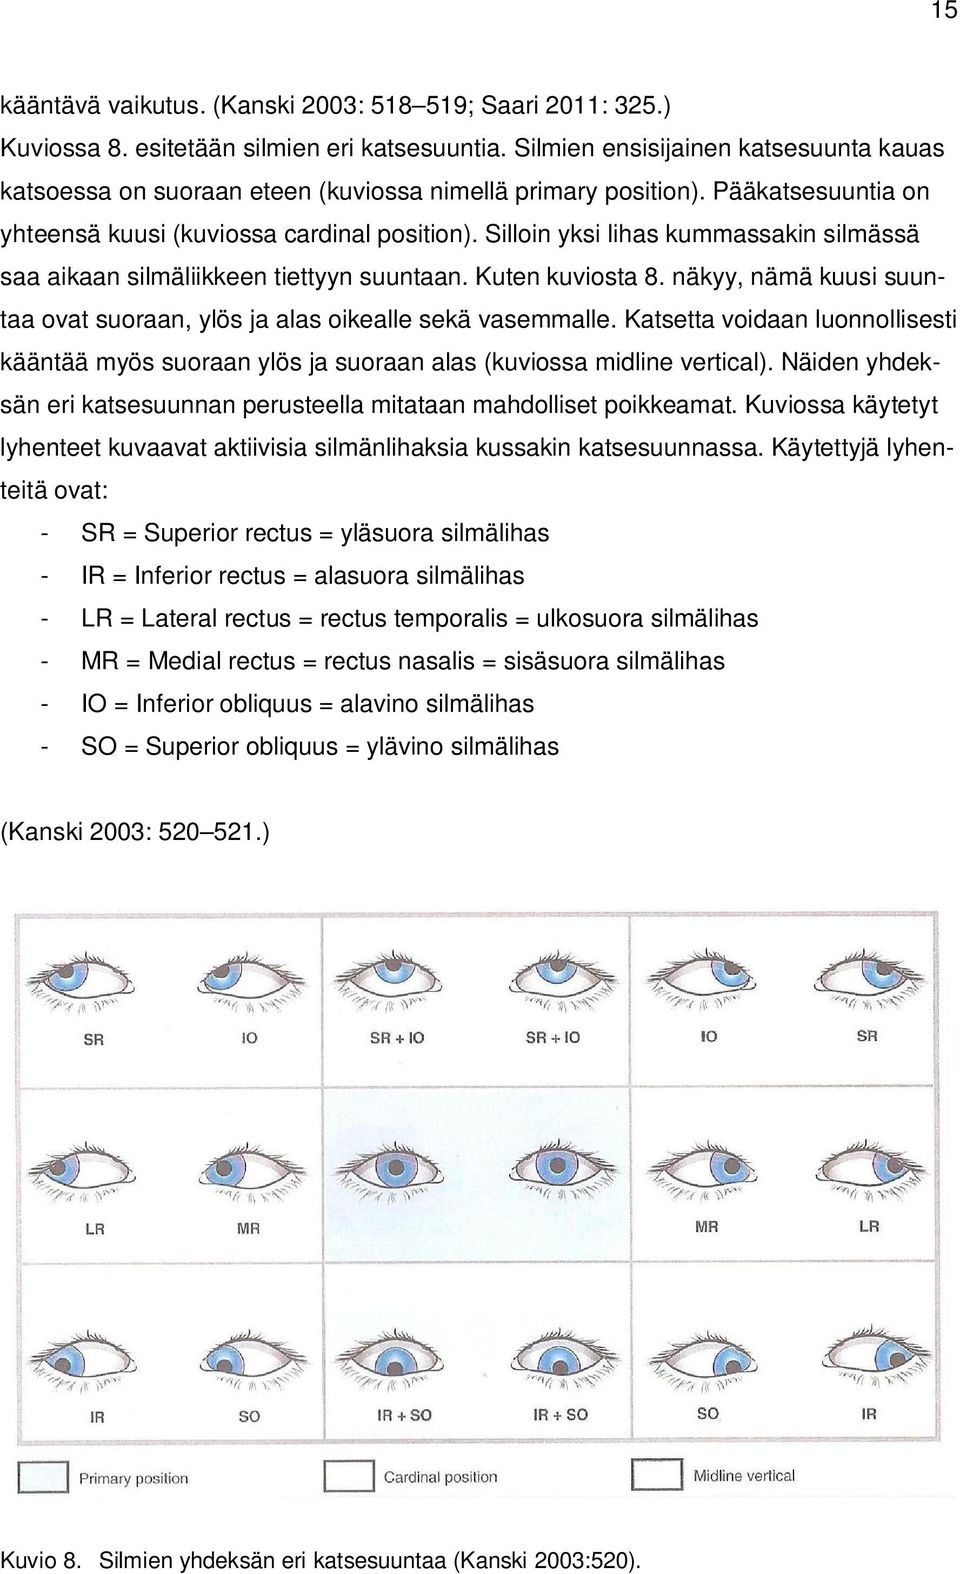 Silloin yksi lihas kummassakin silmässä saa aikaan silmäliikkeen tiettyyn suuntaan. Kuten kuviosta 8. näkyy, nämä kuusi suuntaa ovat suoraan, ylös ja alas oikealle sekä vasemmalle.